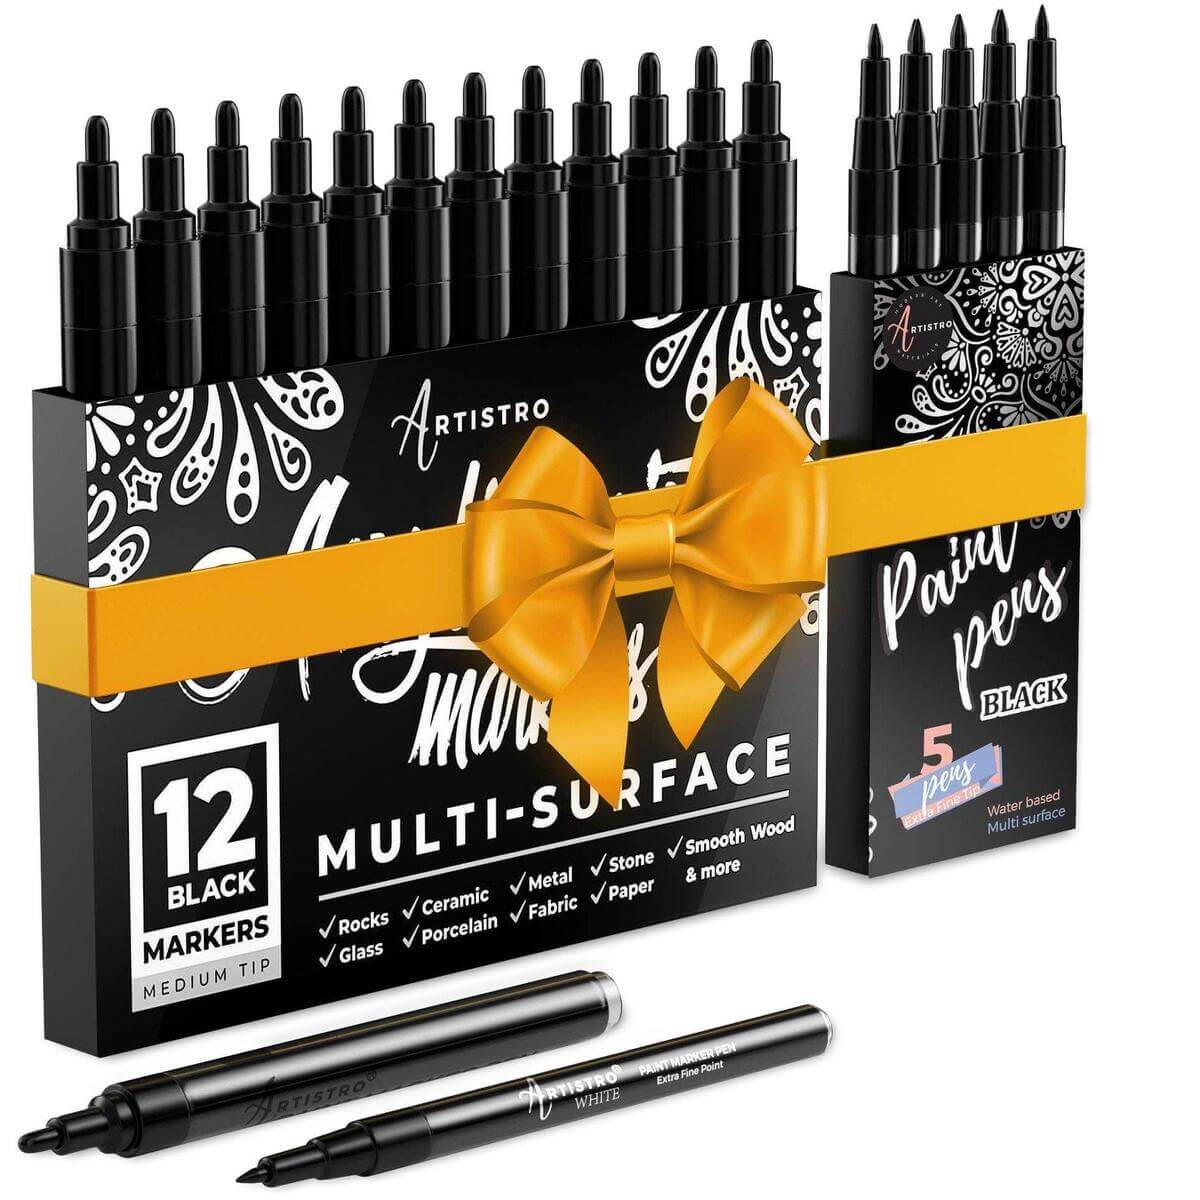 http://artistro.com/cdn/shop/products/17-black-acrylic-paint-pens-bundle-5-extra-fine-tip-black-paint-markers-12-medium-tip-black-paint-markers-753530.jpg?v=1639151383